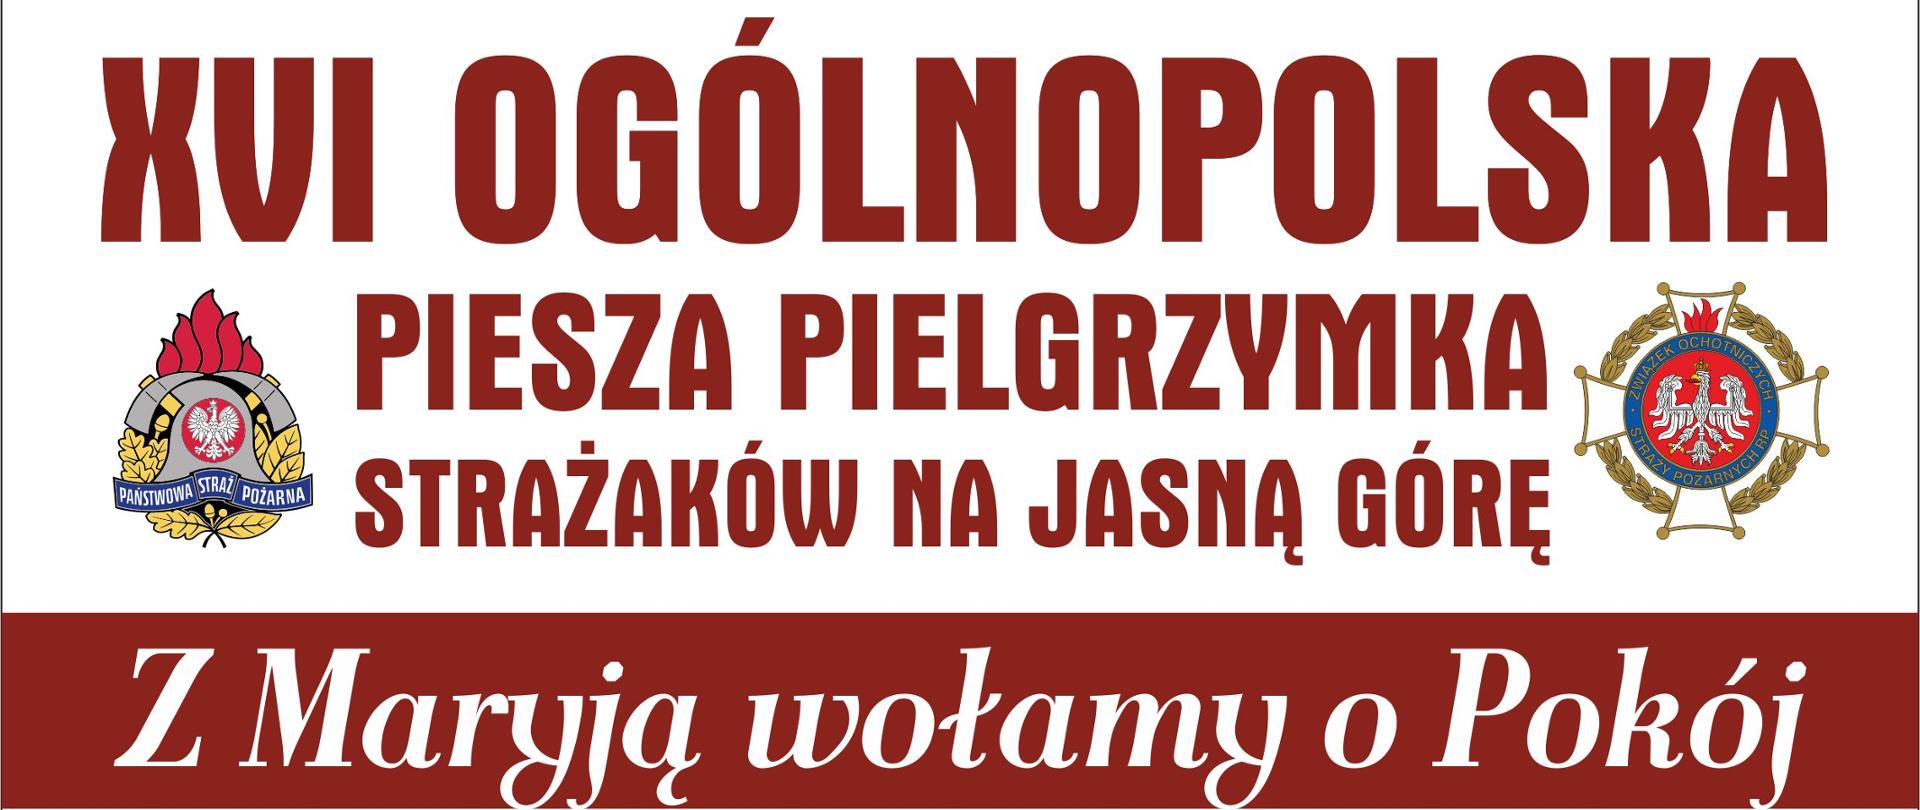 Plakat promujący XVI Ogólnopolską Pieszą Pielgrzymkę Strażaków na Jasną Górę. Termin pielgrzymki 5 - 14 sierpnia, trasa pielgrzymki oraz widok Jasnej Góry.